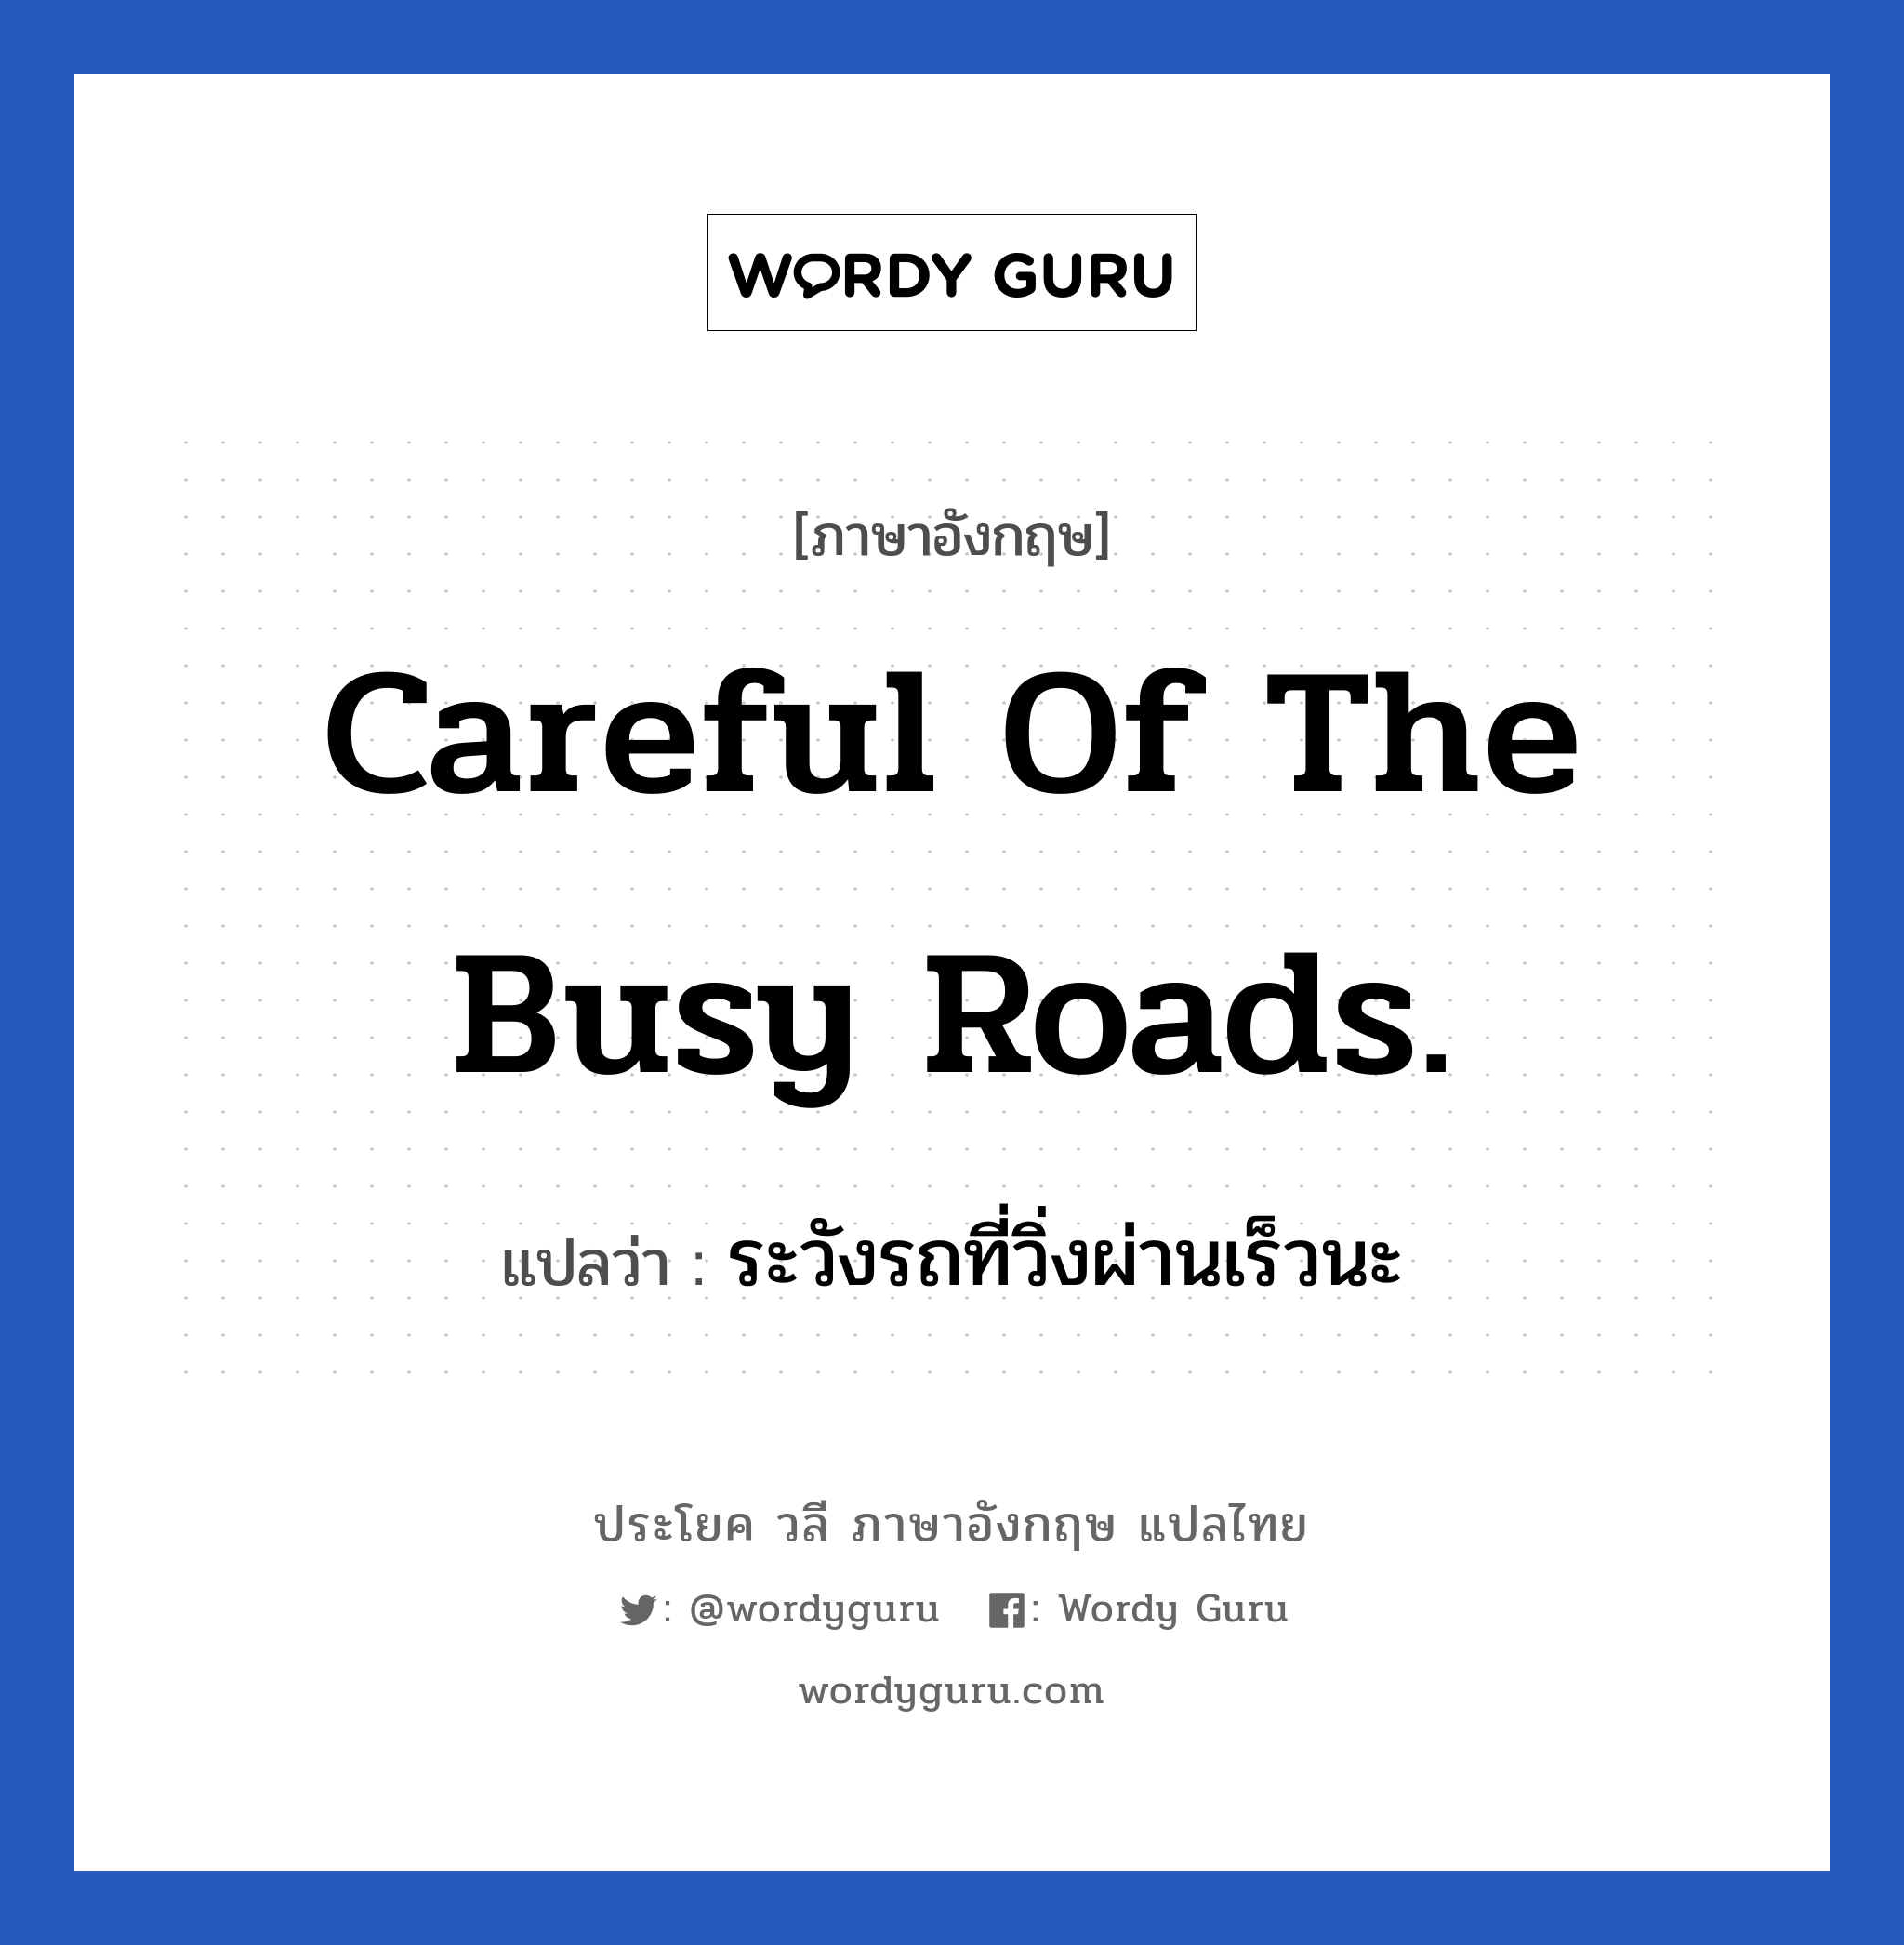 Careful of the busy roads. แปลว่า?, วลีภาษาอังกฤษ Careful of the busy roads. แปลว่า ระวังรถที่วิ่งผ่านเร็วนะ